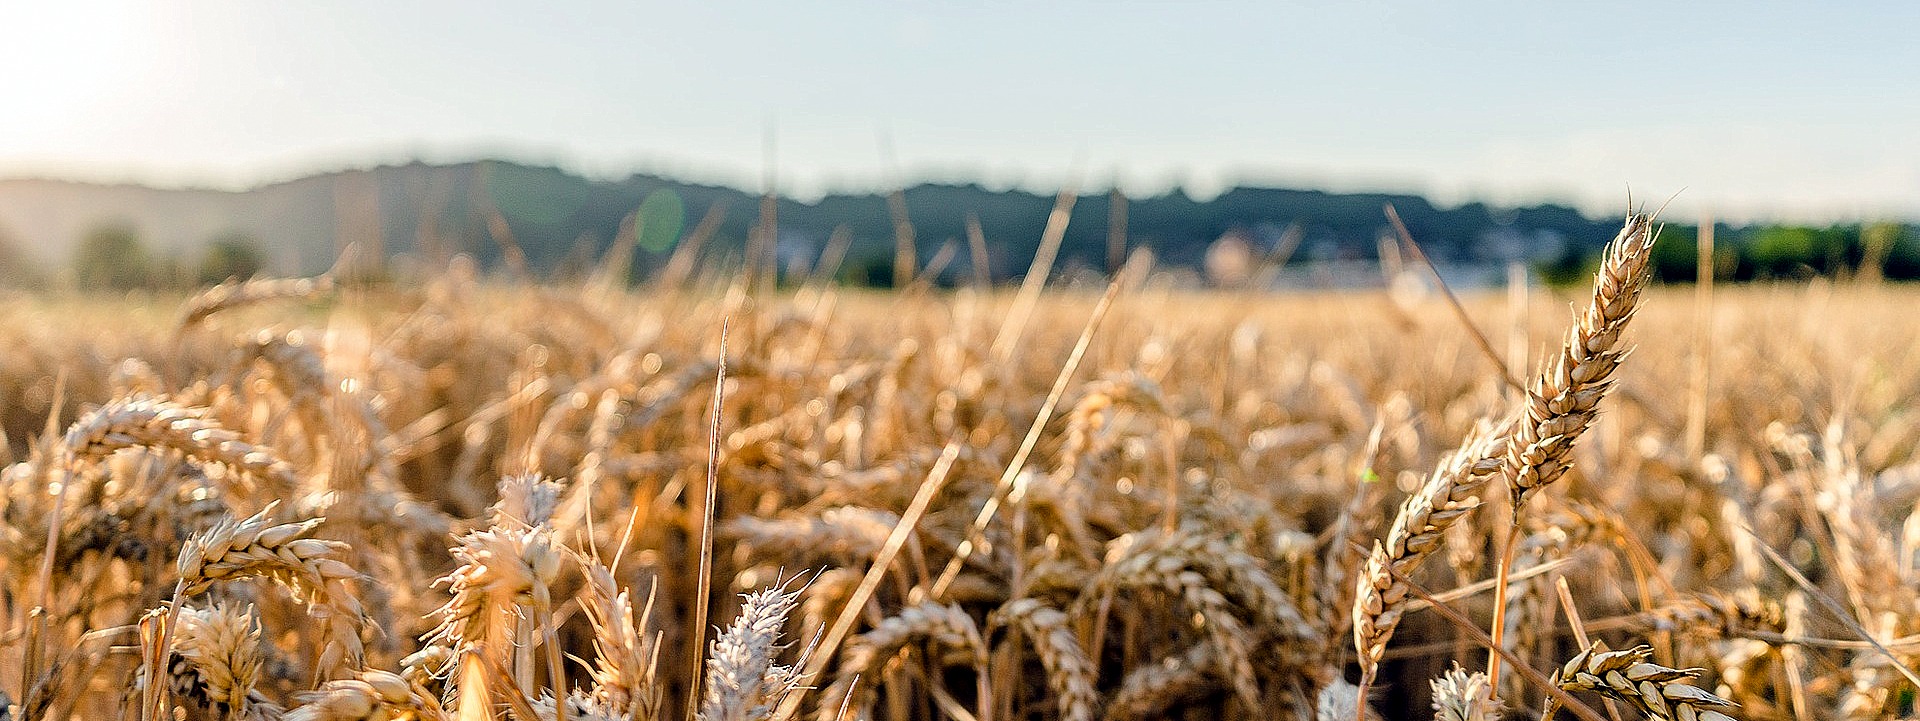 K-Adriatica e Agroservice leader per le sementi da grano. Risposta concreta alla crisi creata dalla guerra in Ucraina